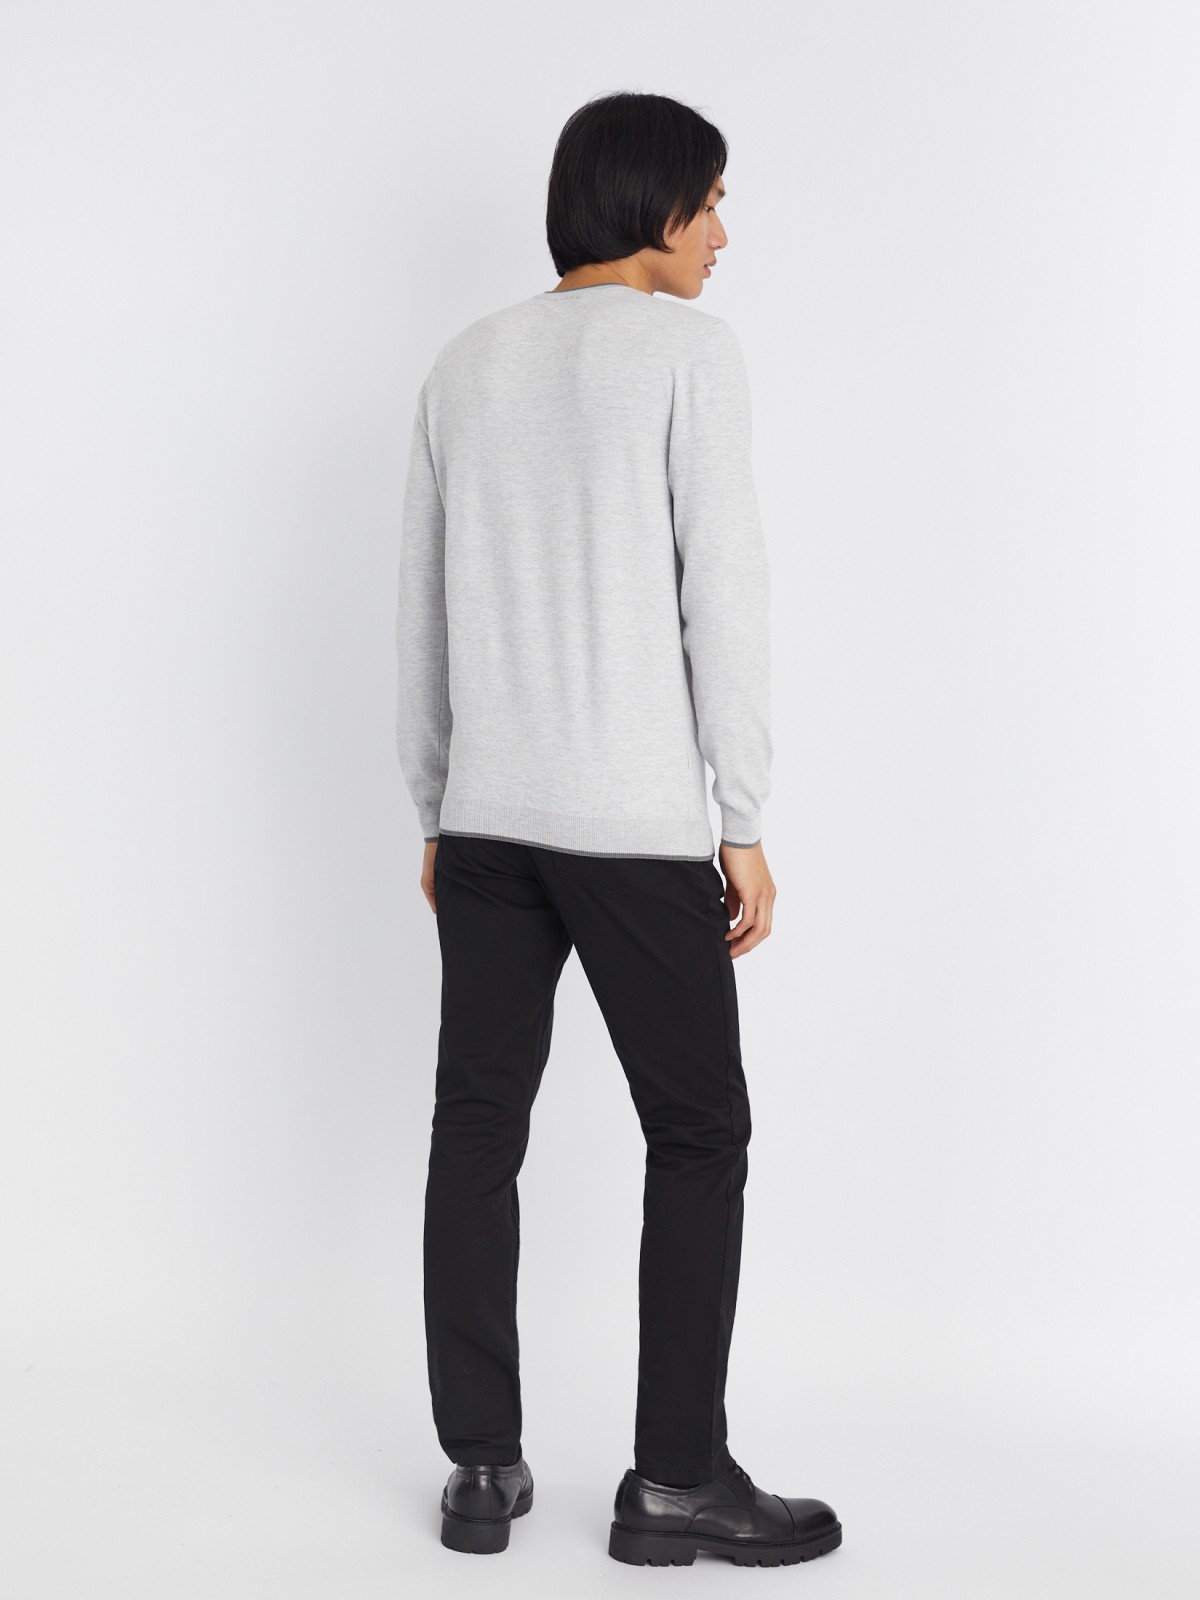 Тонкий трикотажный пуловер с треугольным вырезом и длинным рукавом zolla 213336165022, цвет светло-серый, размер L - фото 6